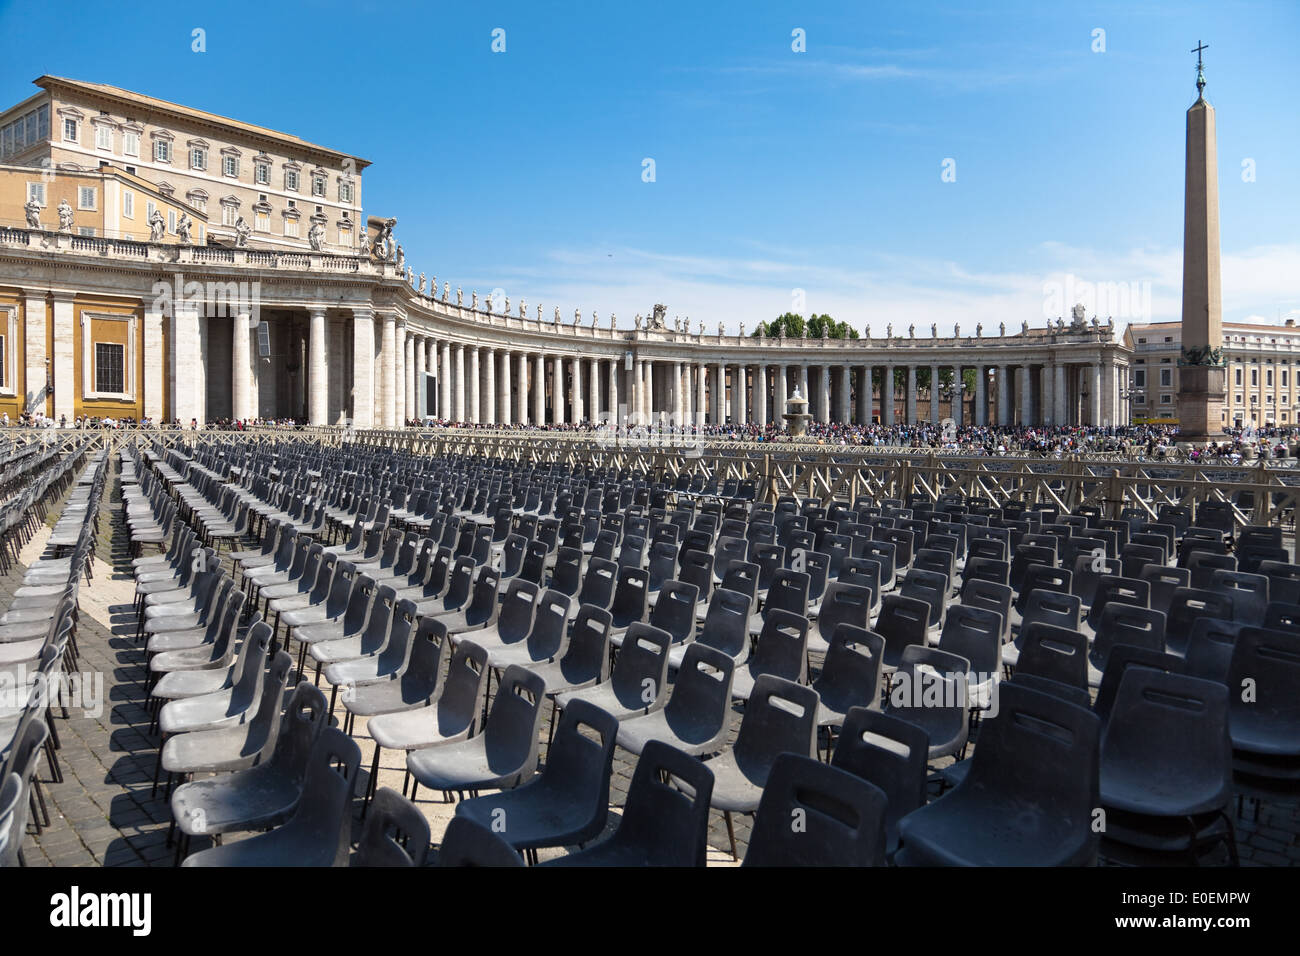 Sesselreihen auf dem Petersplatz, Vatikan - Linea di sedie sulla piazza di San Pietro e Città del Vaticano Foto Stock